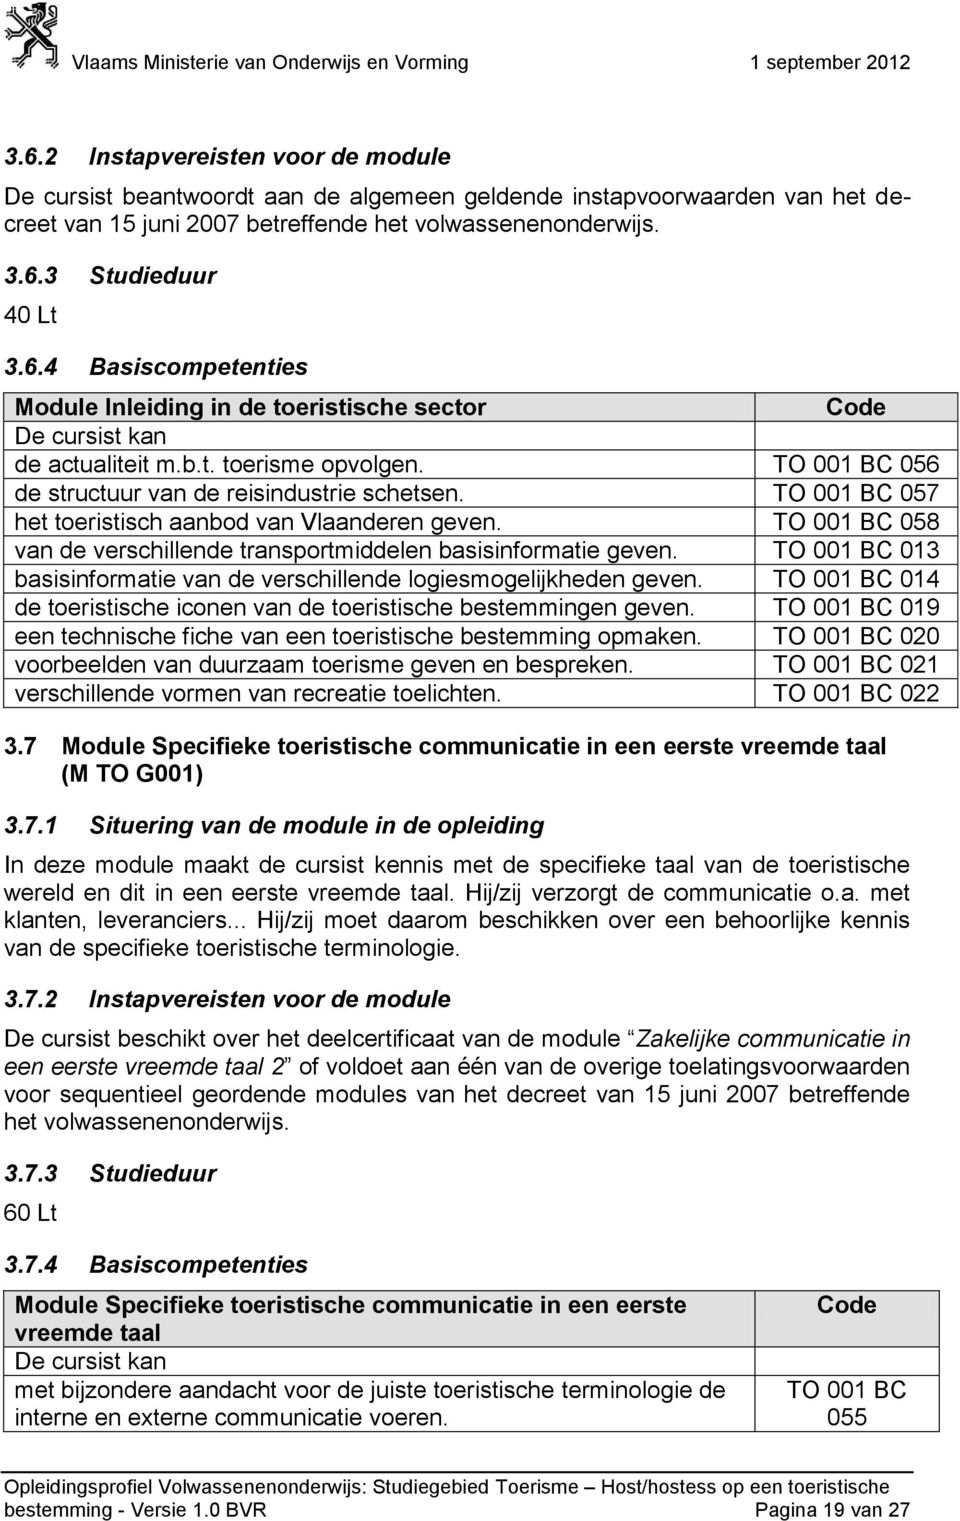 057 het toeristisch aanbod van Vlaanderen geven. 058 van de verschillende transportmiddelen basisinformatie geven. 013 basisinformatie van de verschillende logiesmogelijkheden geven.